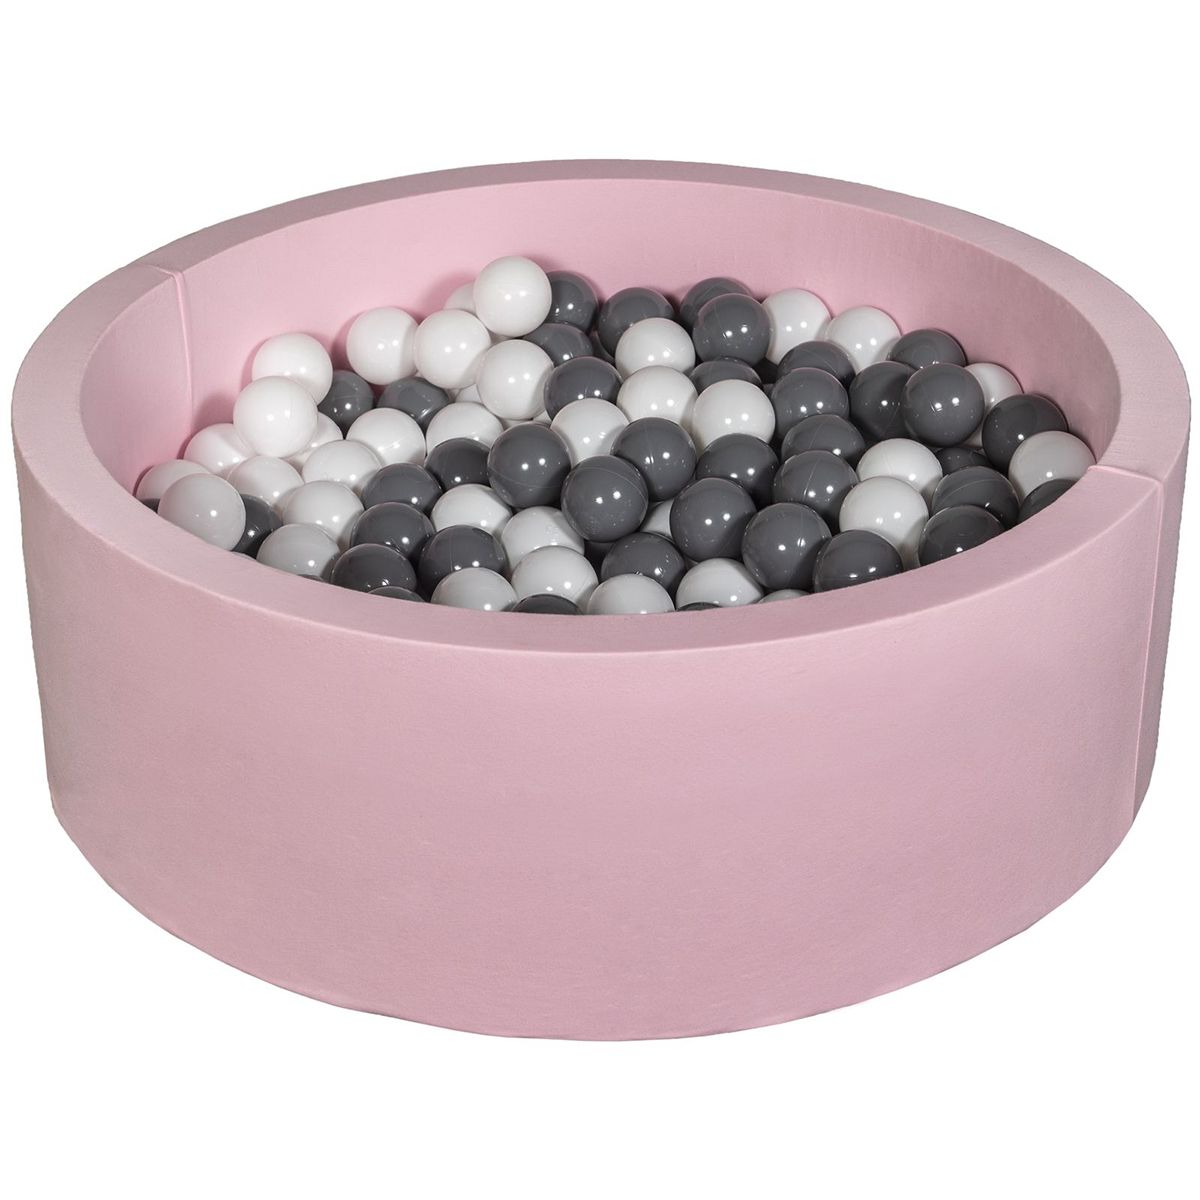  Piscine à balles Aire de jeu + 200 balles rose blanc,gris